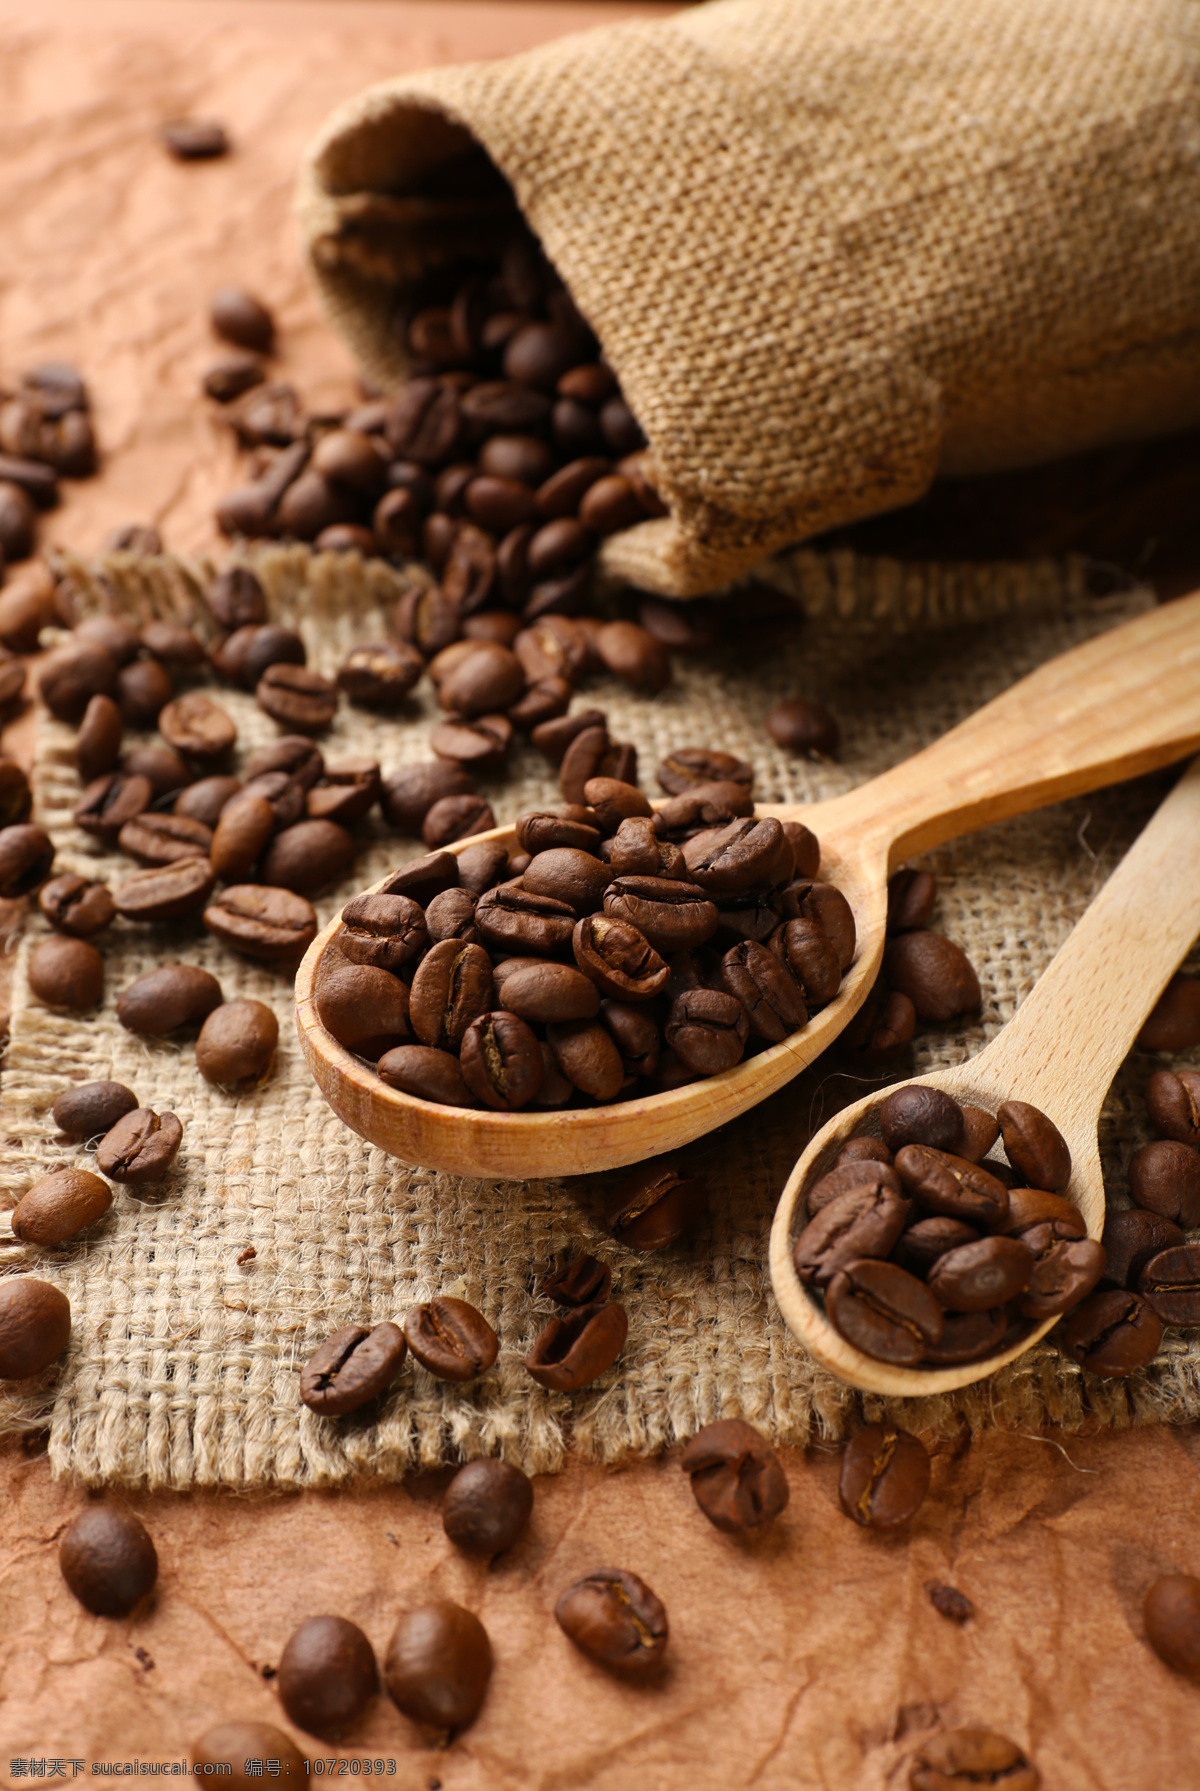 木勺 里 咖啡豆 咖啡 咖啡果 咖啡原料 其他类别 餐饮美食 黑色